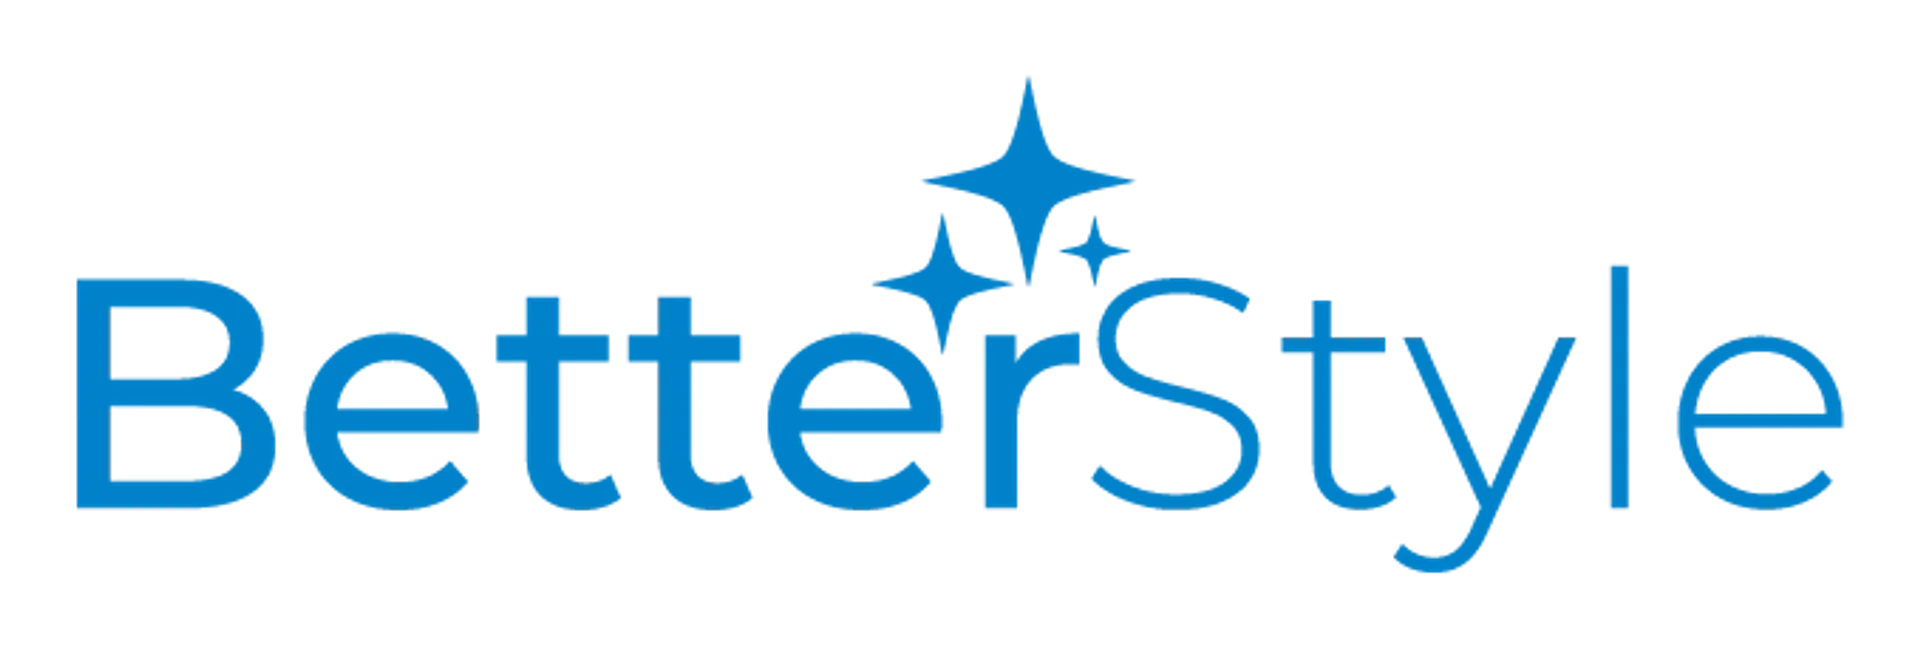 BETTERSTYLE logo